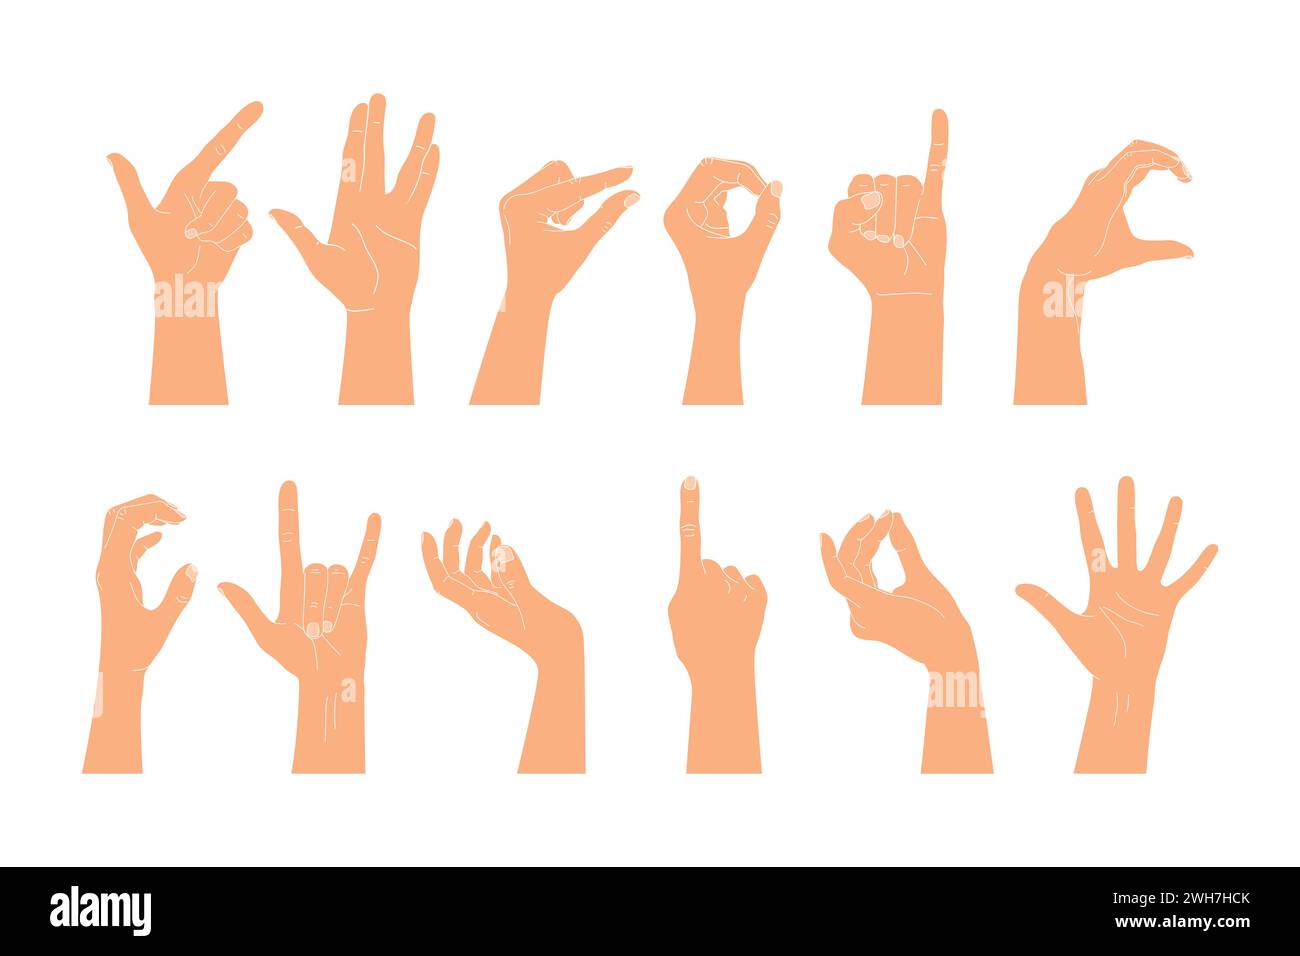 Set di mani umane alzate che mostrano gesti diversi. Illustrazione vettoriale di mani umane Illustrazione Vettoriale